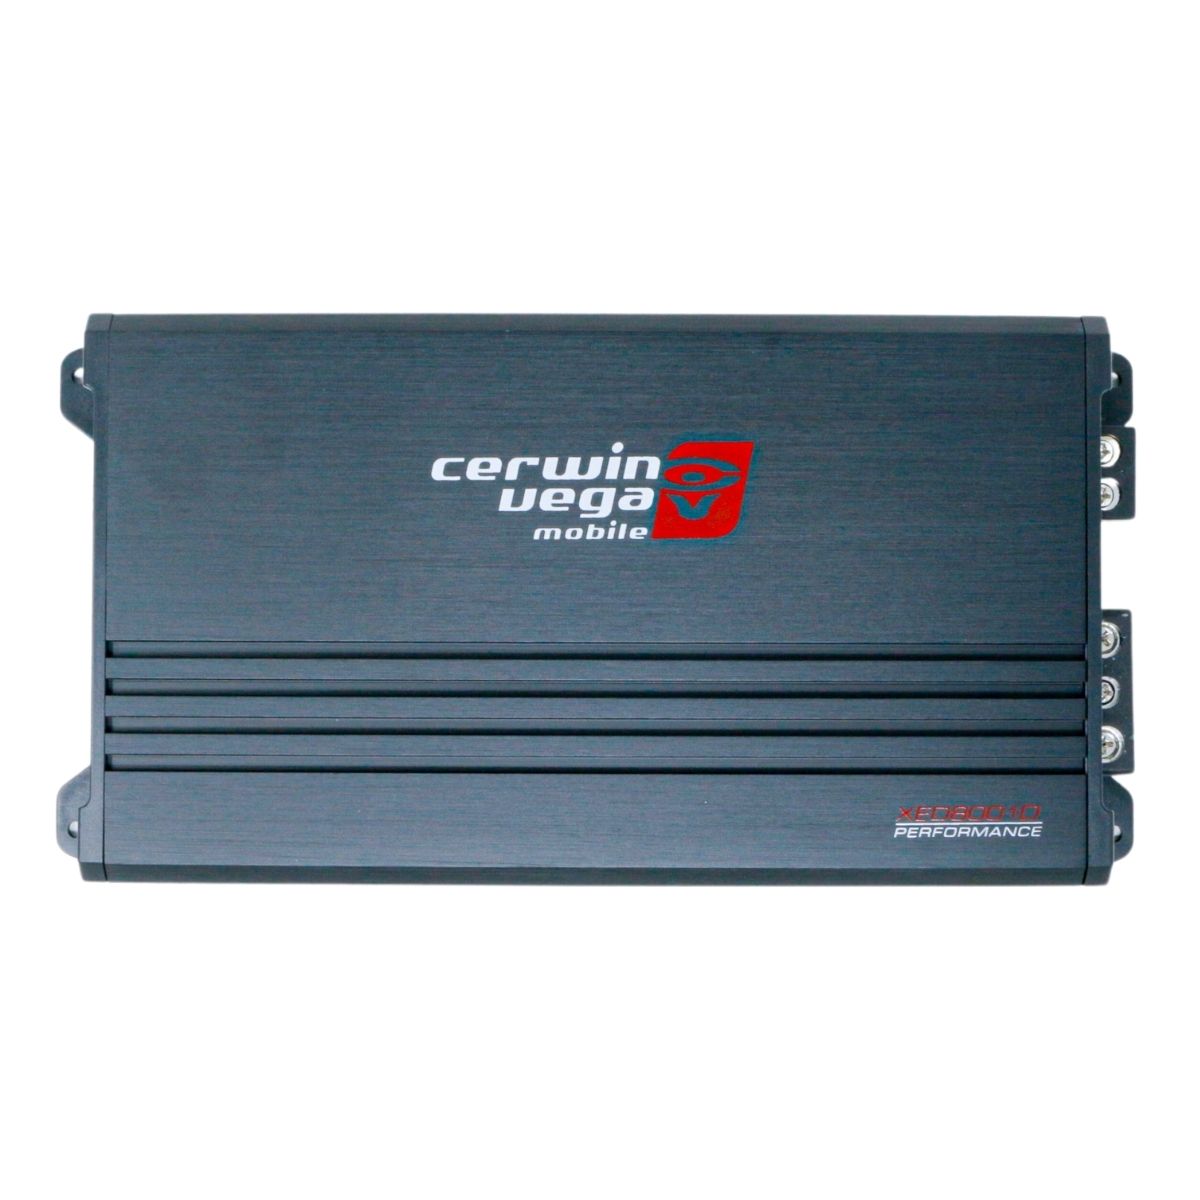 Cerwin Vega XED8001D 800W RMS Mono Amplifier